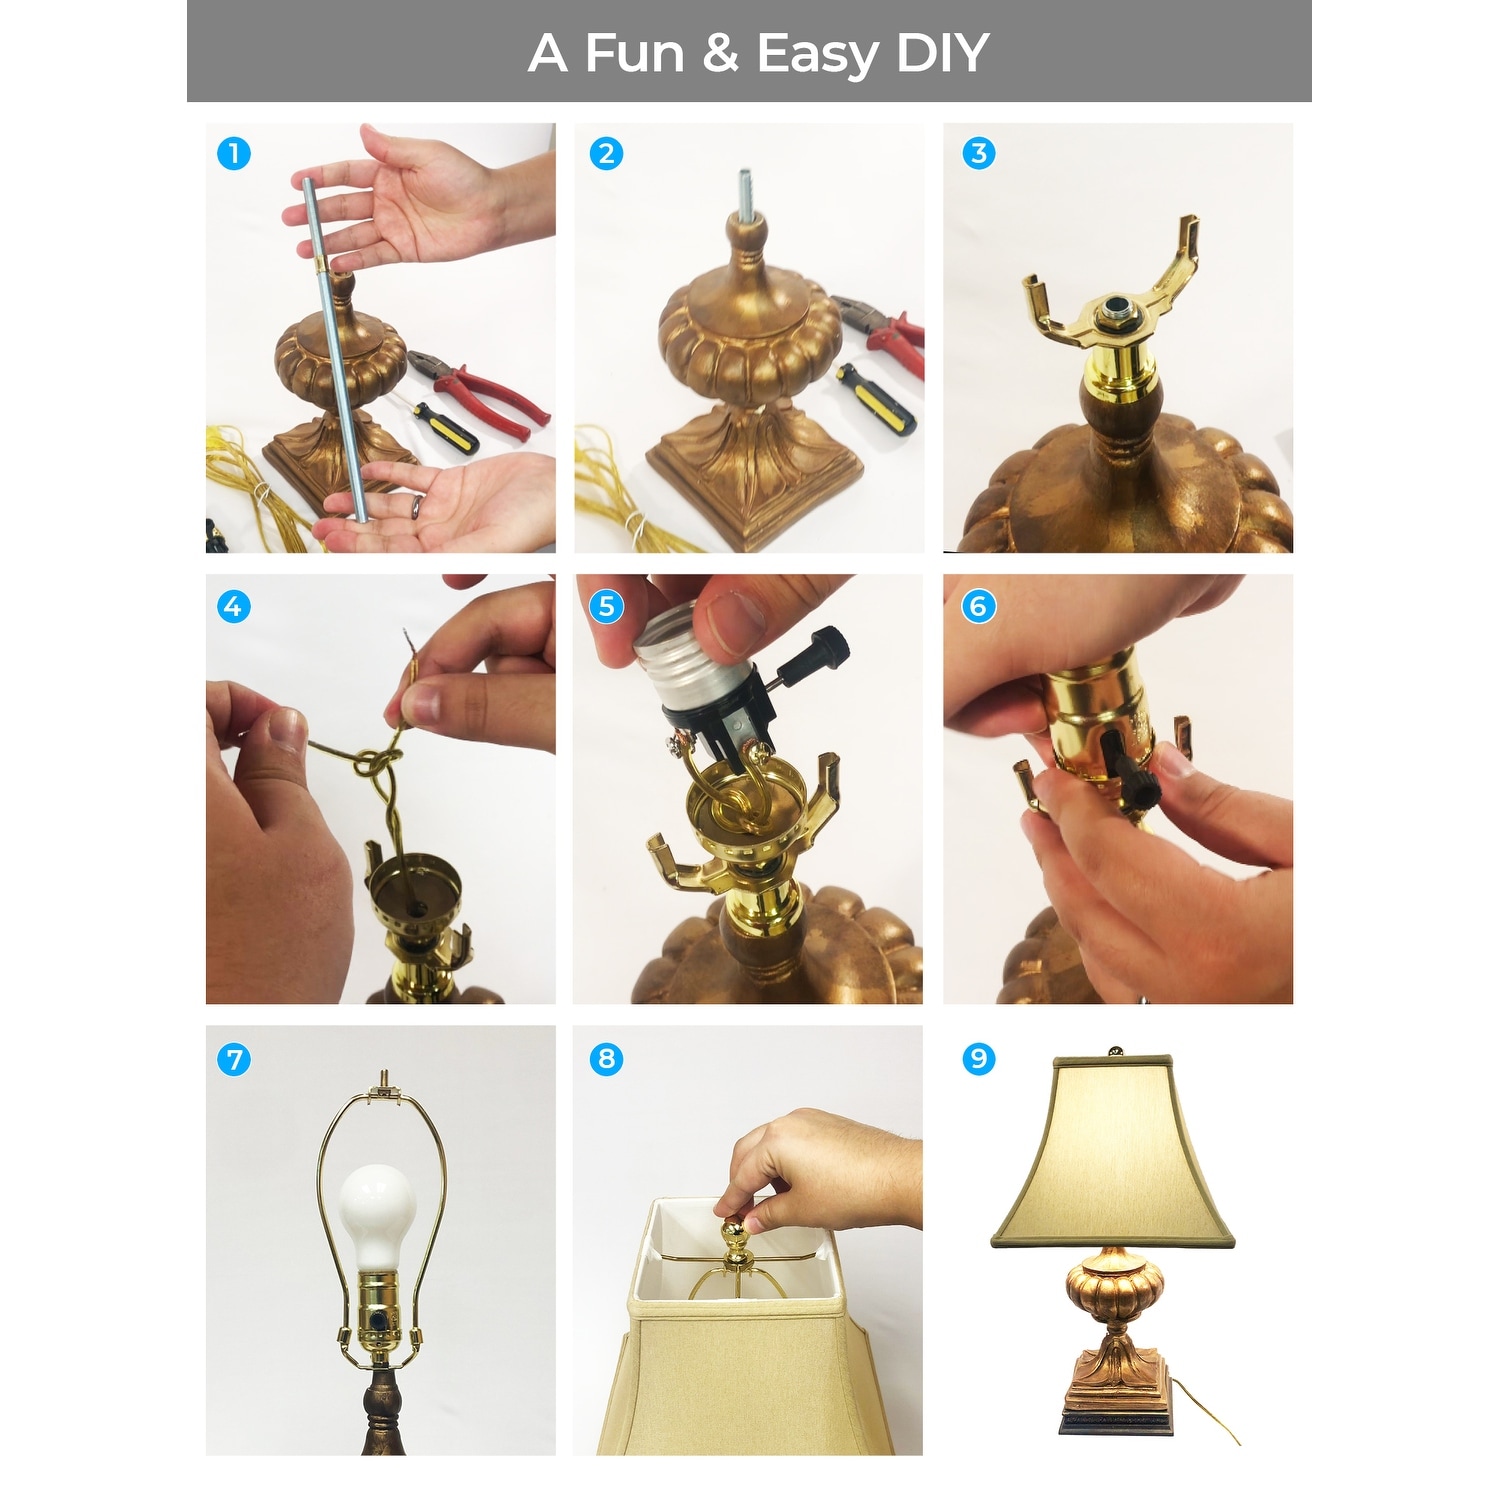 Royal Designs DIY Lamp Making Kit - Make, Refurbish, and Repair